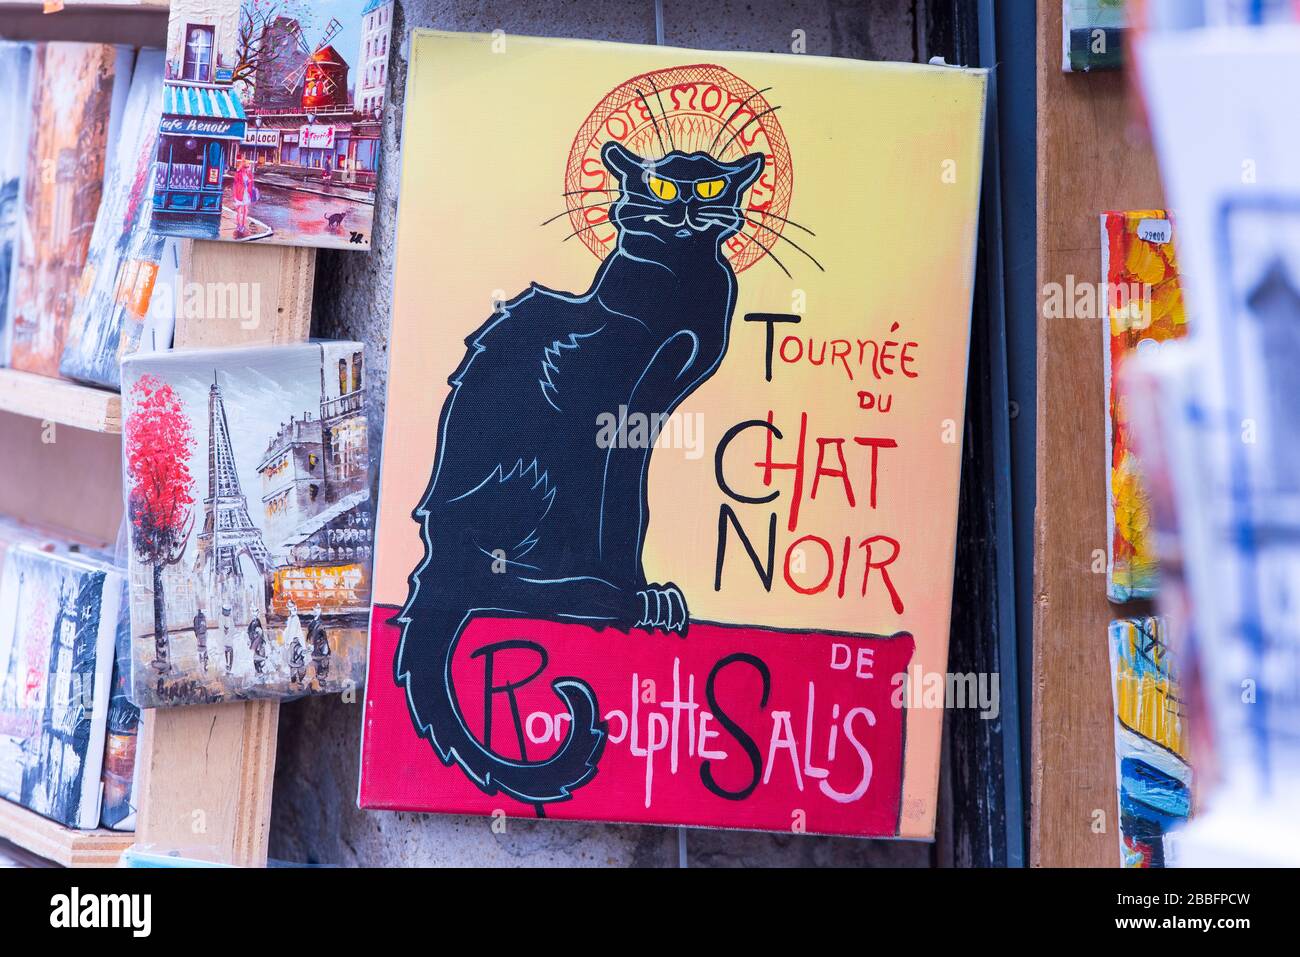 PARÍS - 06 DE MAYO: Recuerdo con le Chat Noir o cabaret el gato negro en  París el 06 de mayo. 2017 en Francia Fotografía de stock - Alamy